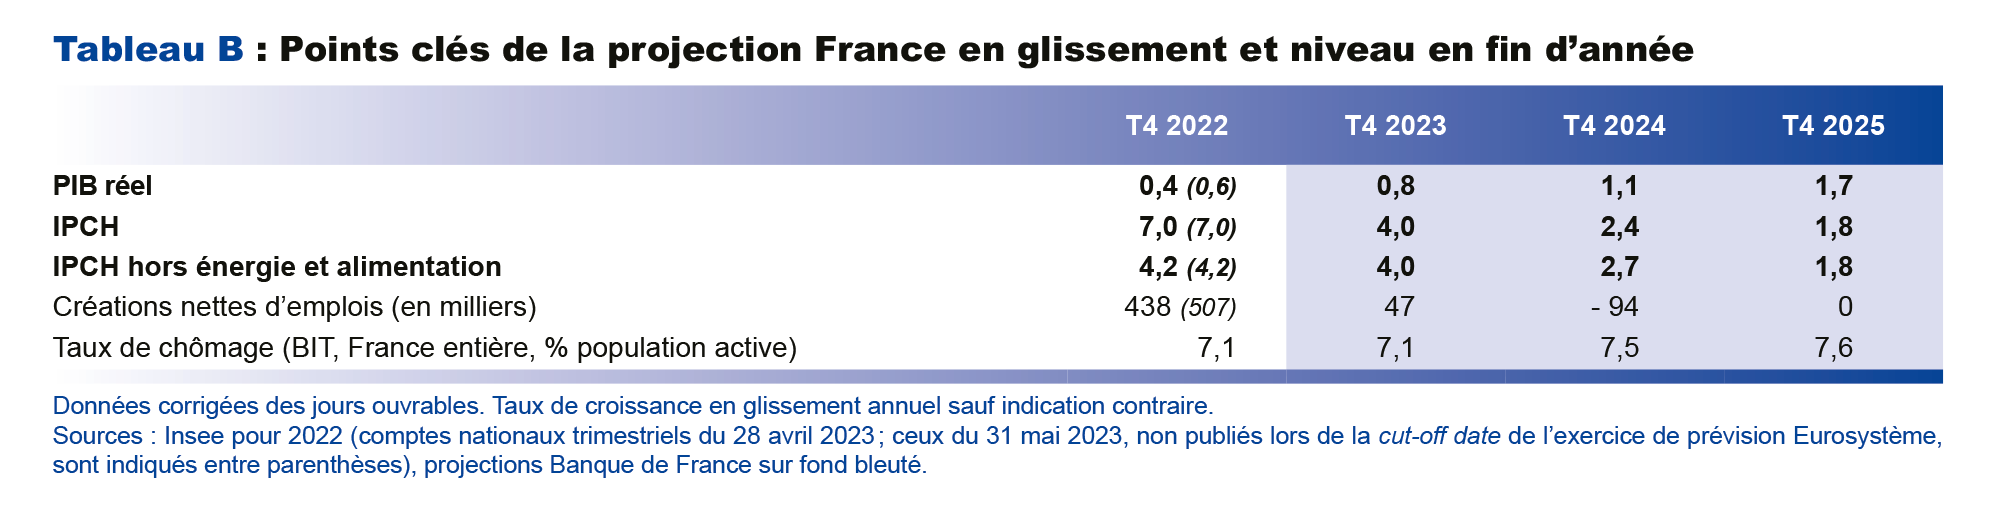 Points clés de la Projection France en glissement et niveau en fin d'année